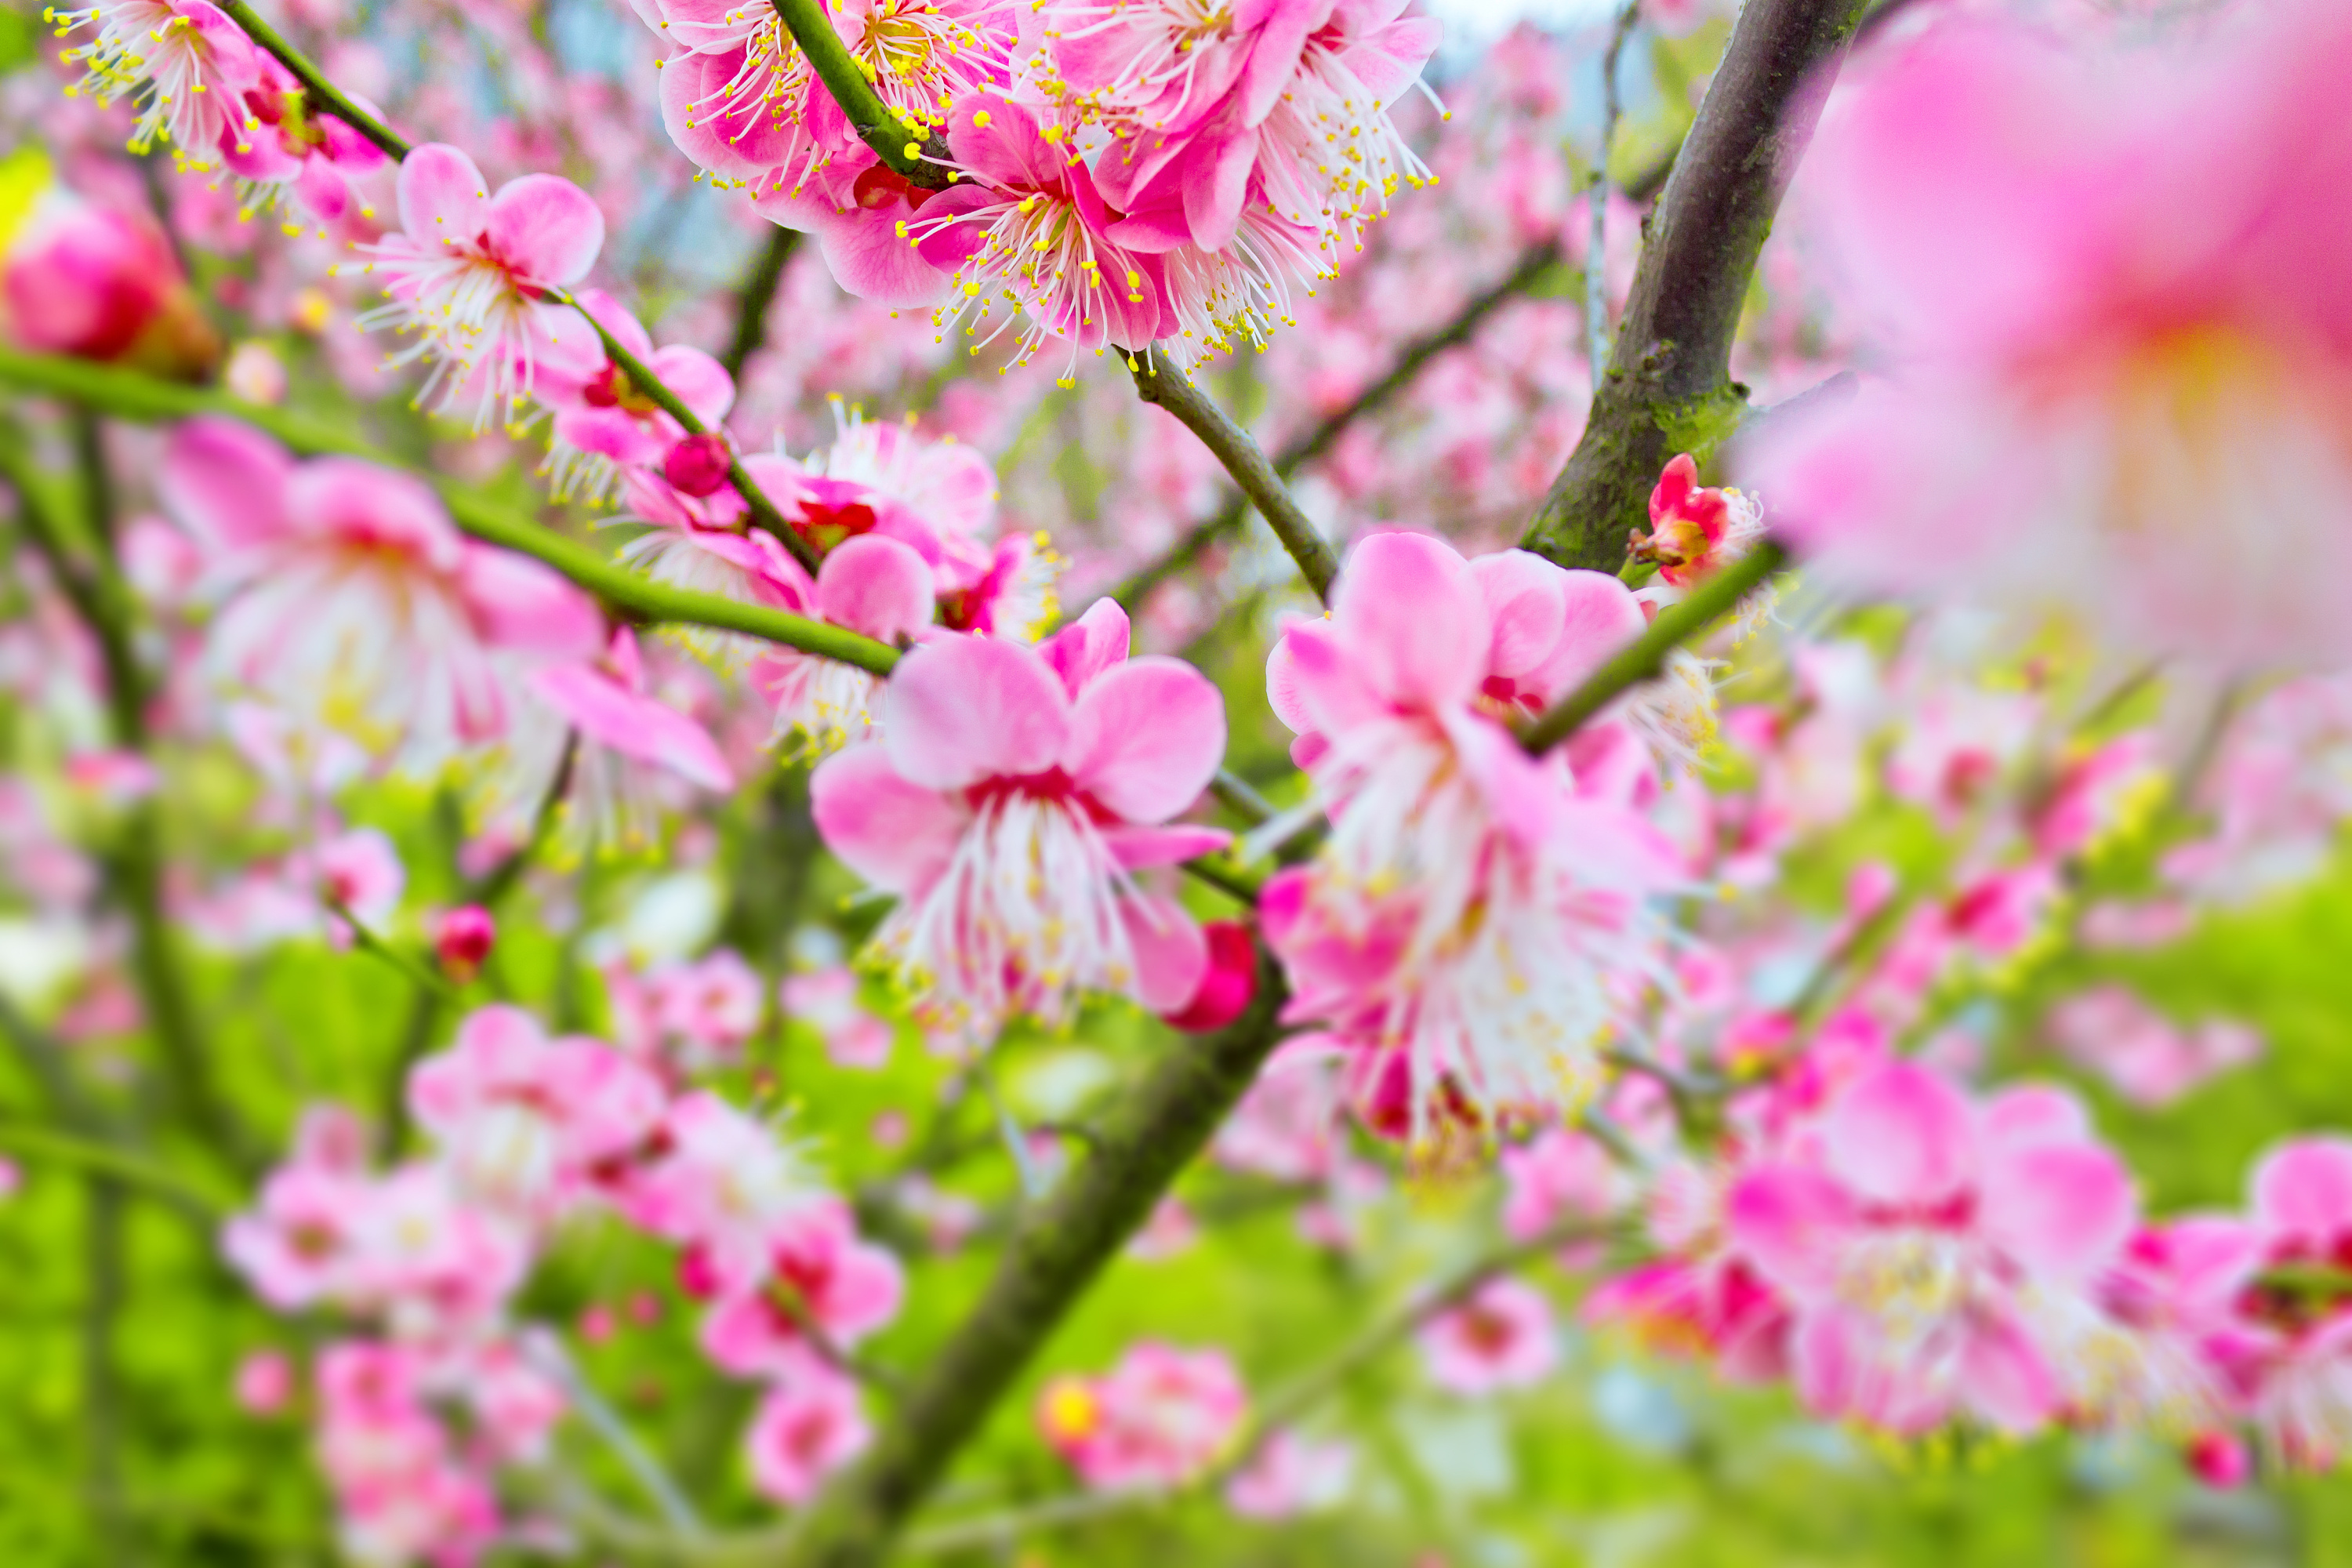 3月最新漂亮春日风景早上好图片带祝福语 免打字的春天早安风景图片带字温馨精选|3月|最新-滚动读报-川北在线